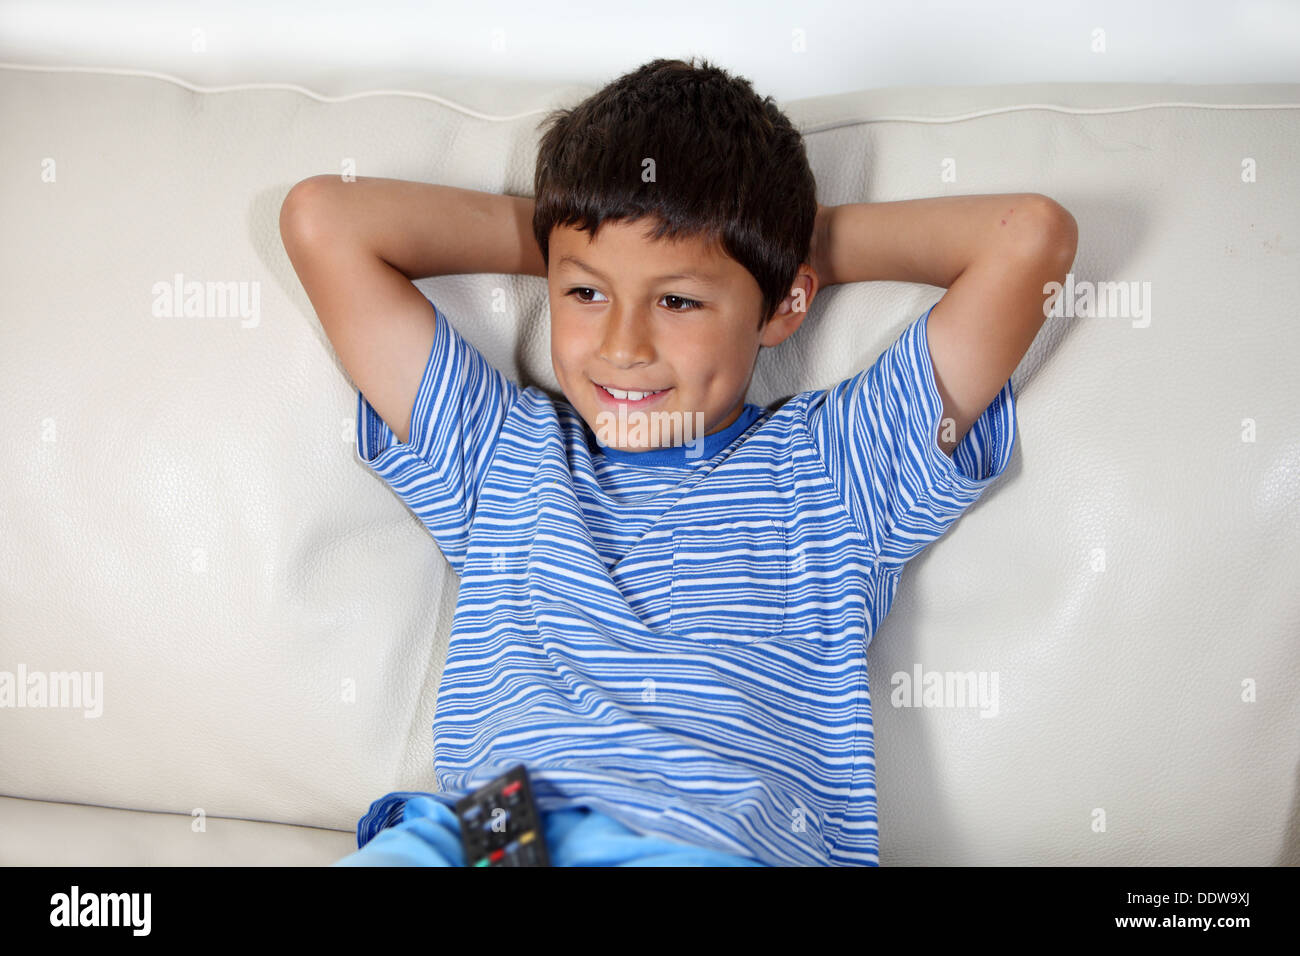 Jeune garçon regardant la TV avec télécommande Banque D'Images